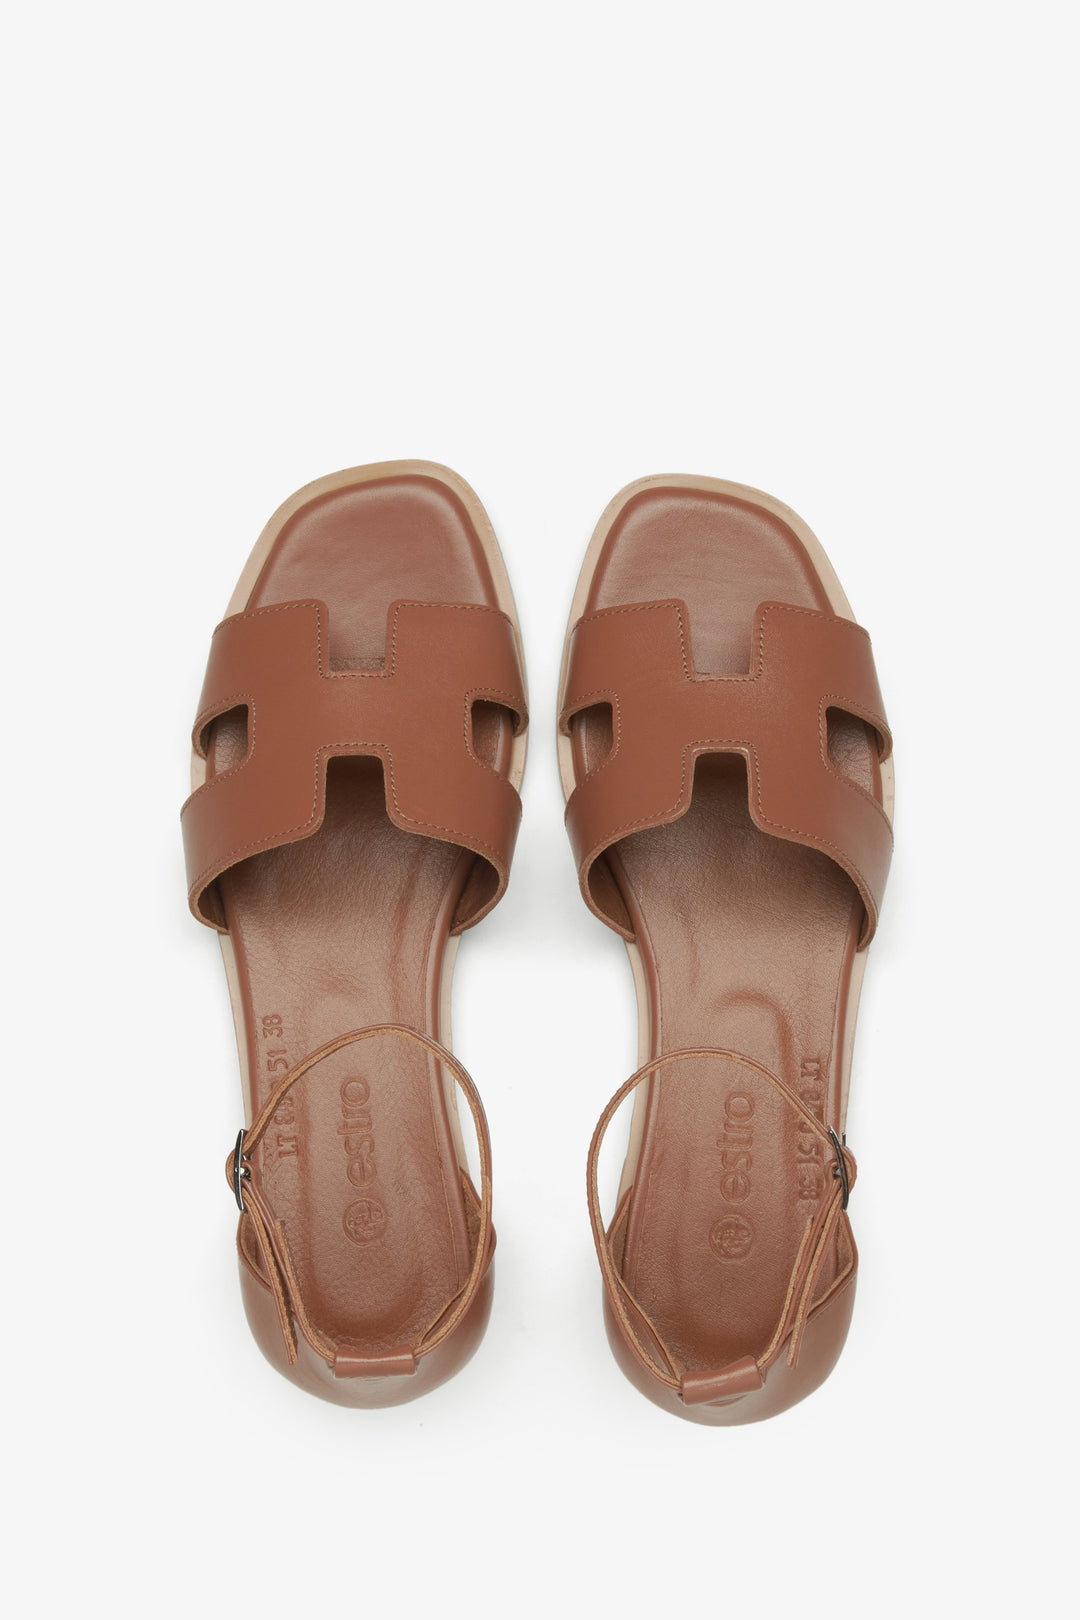 Damskie skórzane sandały Estro w kolorze brązowym - prezentacja modelu z góry.